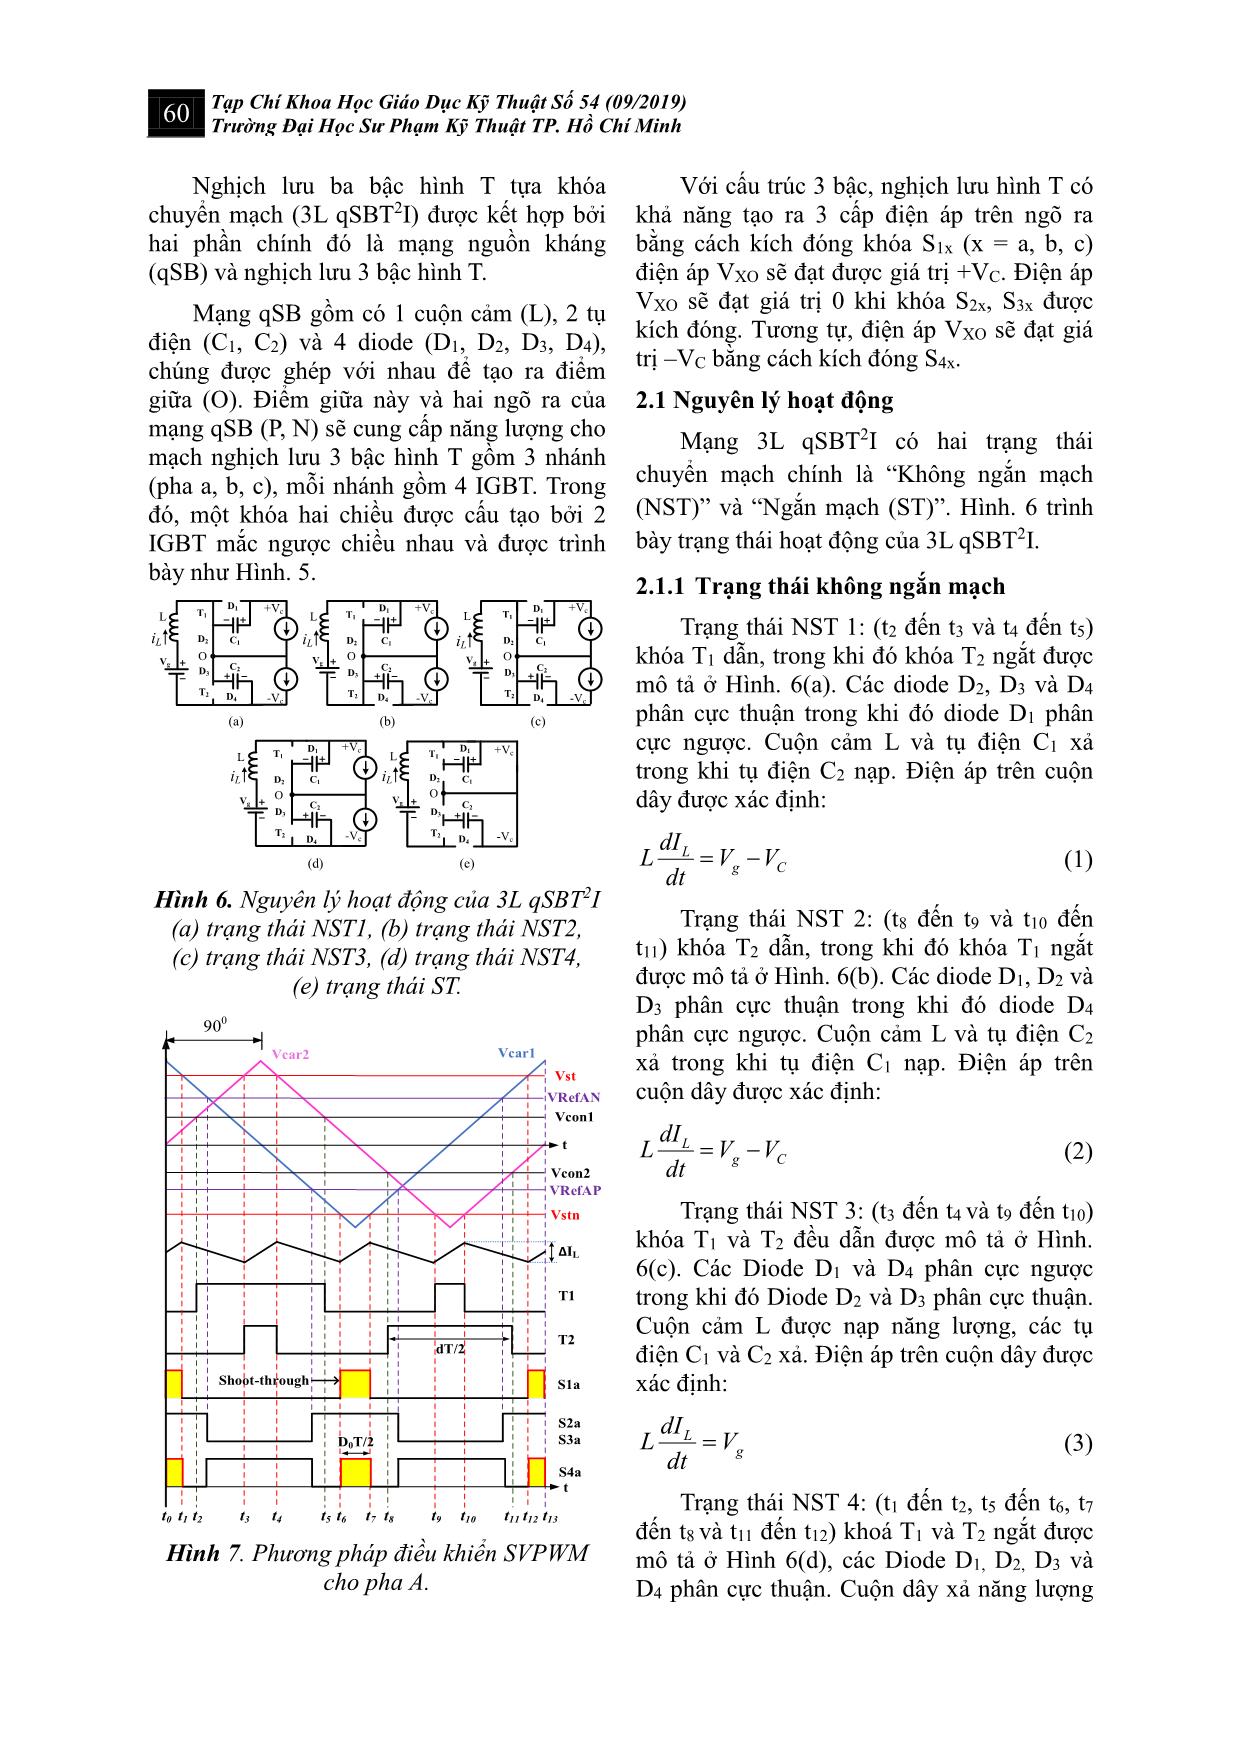 Kỹ thuật vector không gian cải tiến cho nghịch lưu hình t ba bậc để giảm điện áp common mode trang 3